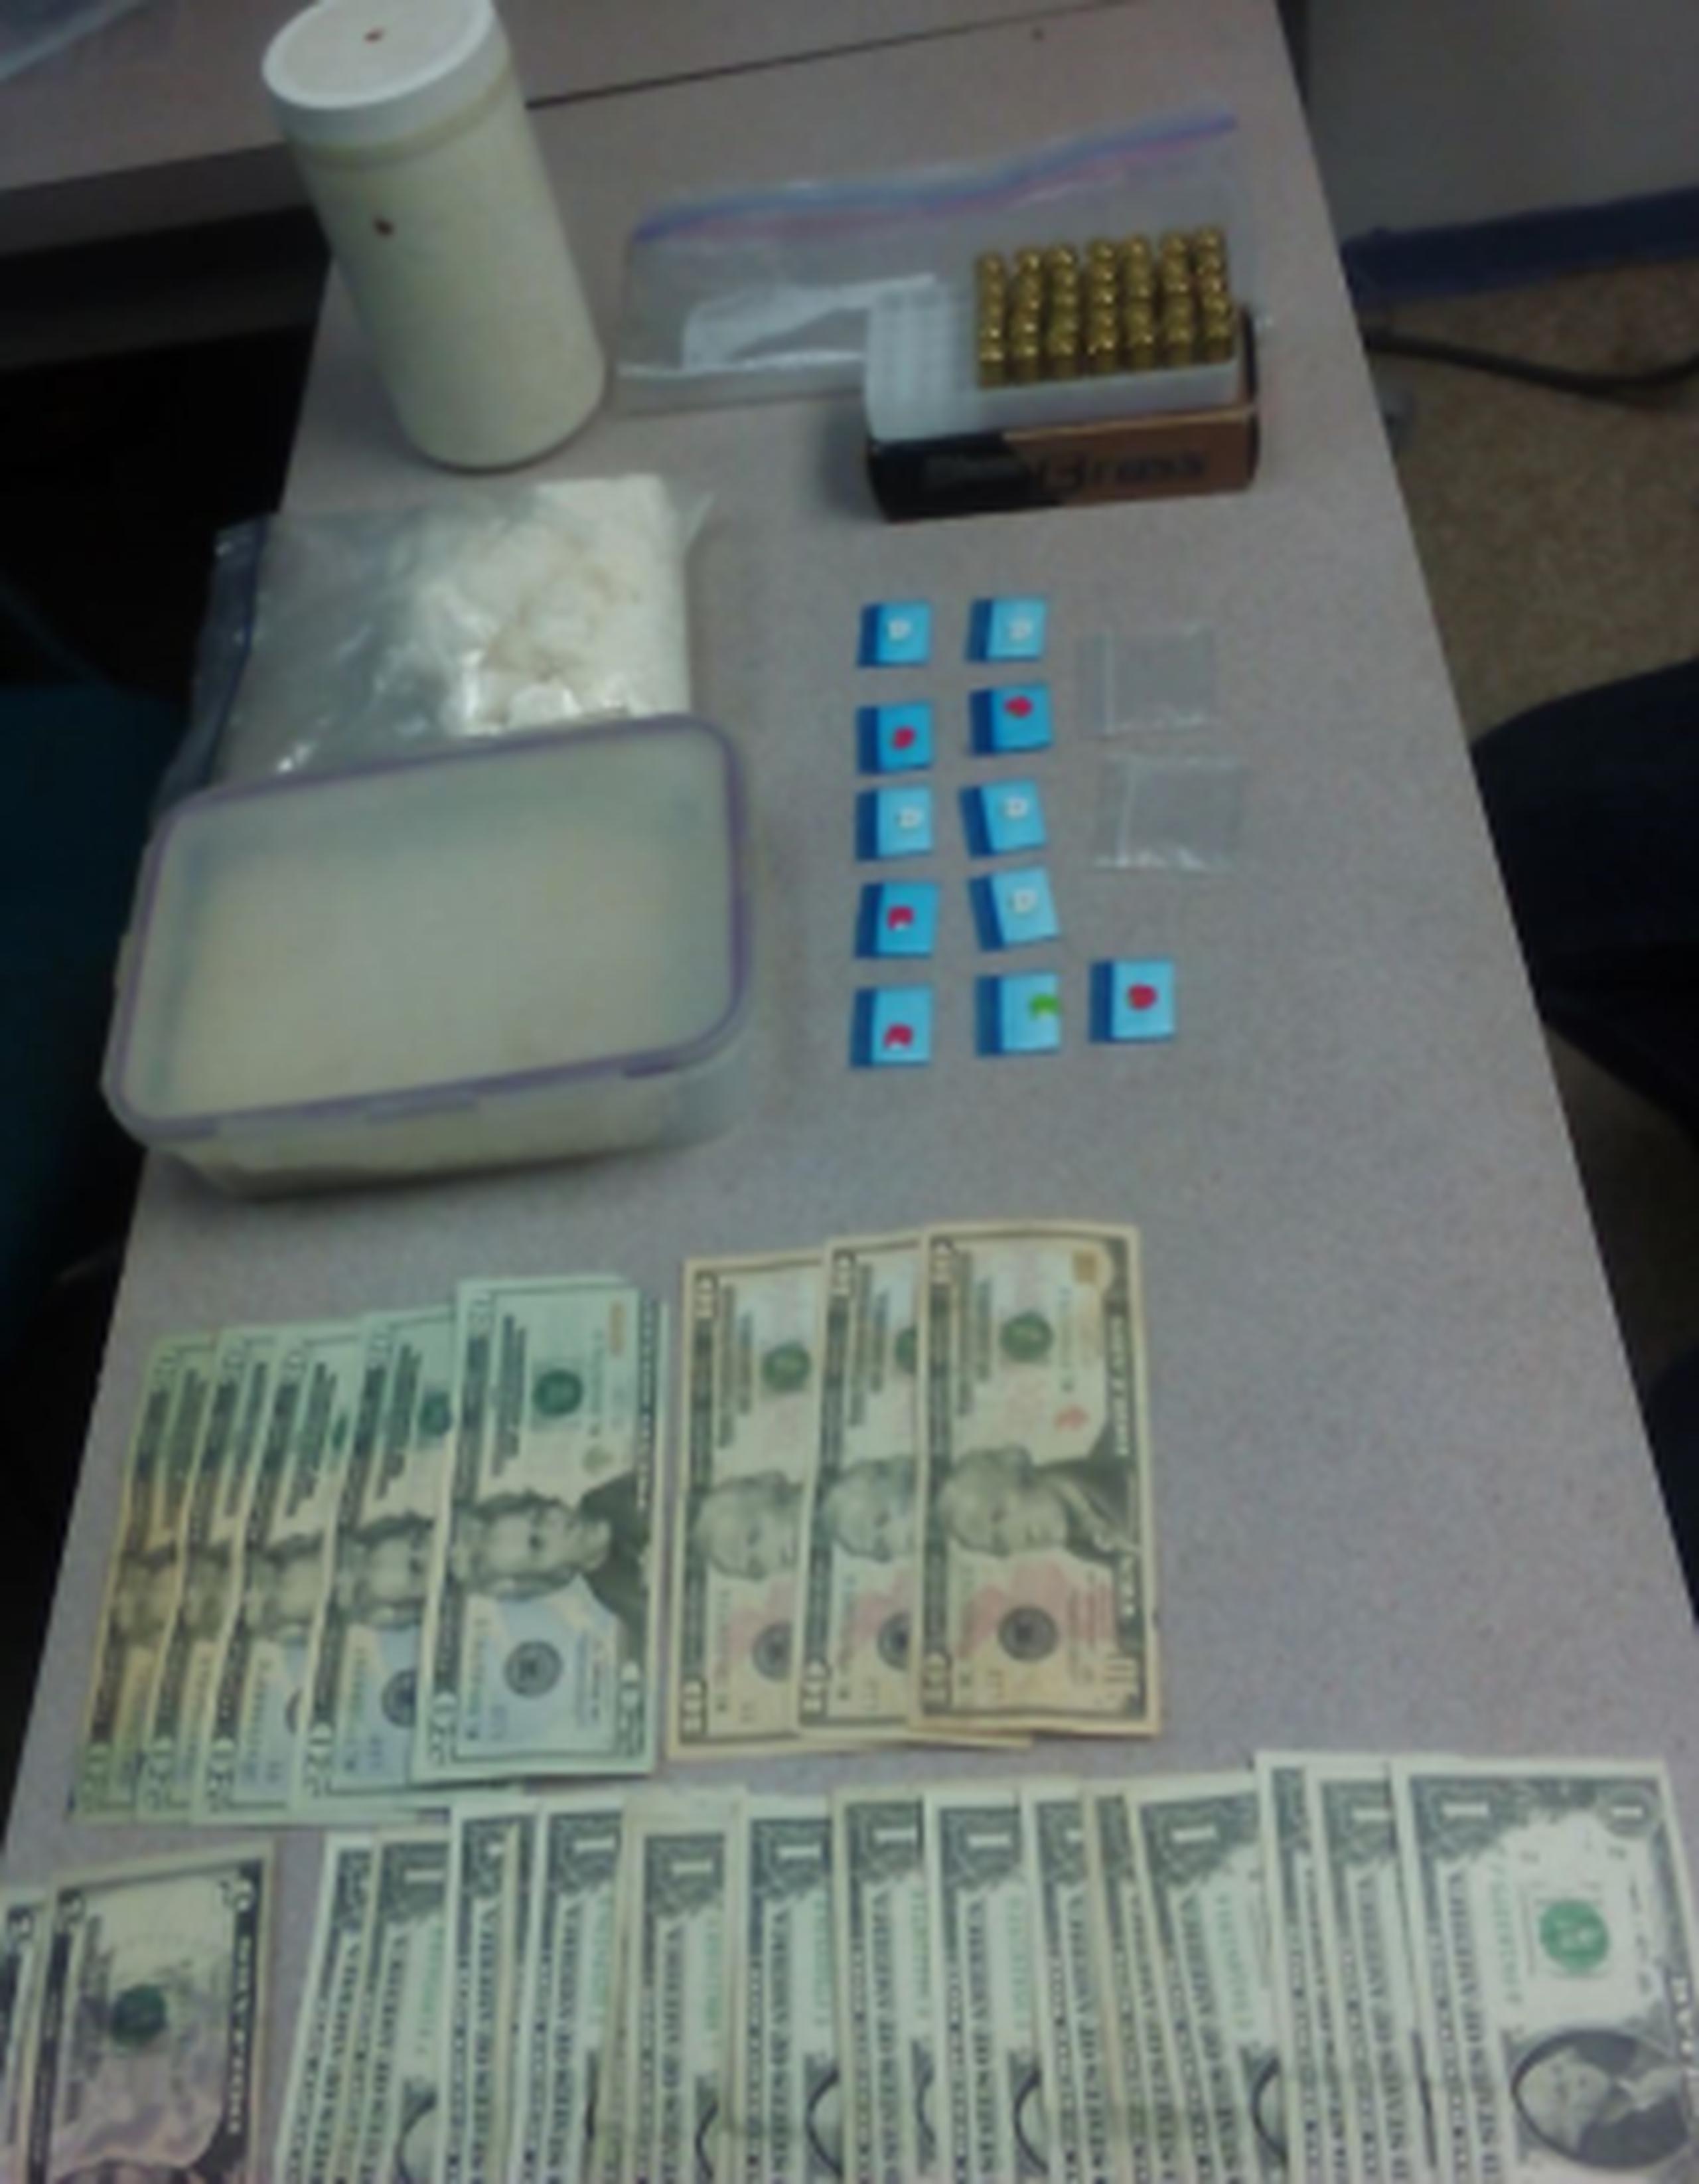 En el lugar se ocupó 505 gramos de cocaína, 11 bolsas de cocaína, $157 en efectivo y 35 balas .40. (Suministrada)